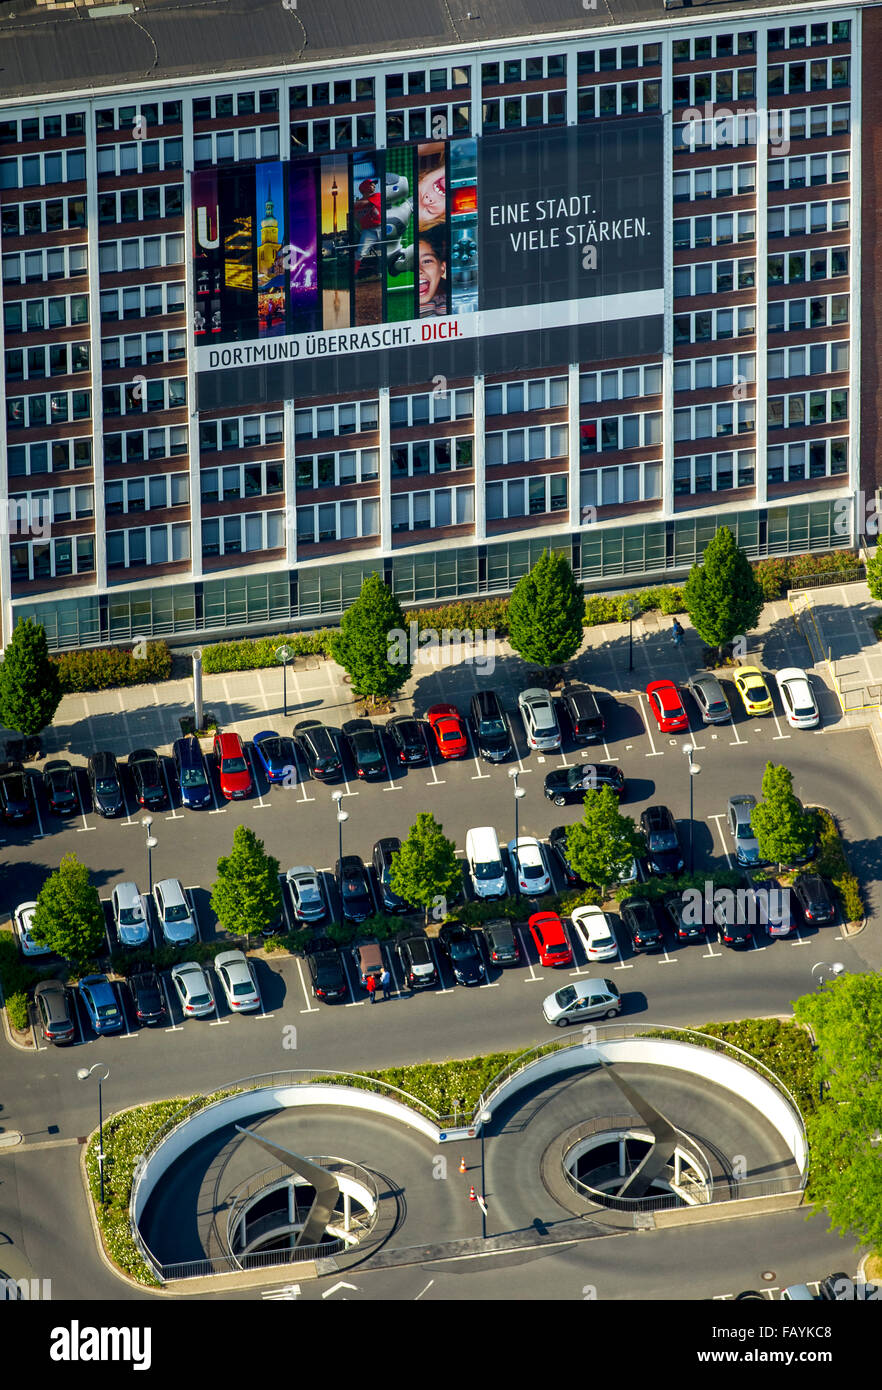 Luftaufnahme, Plakat "Eine Stadt - viele stärken", dass Dortmund überrascht Sie, Stadtrat für Wohnbau und Stadterneuerung, Stockfoto